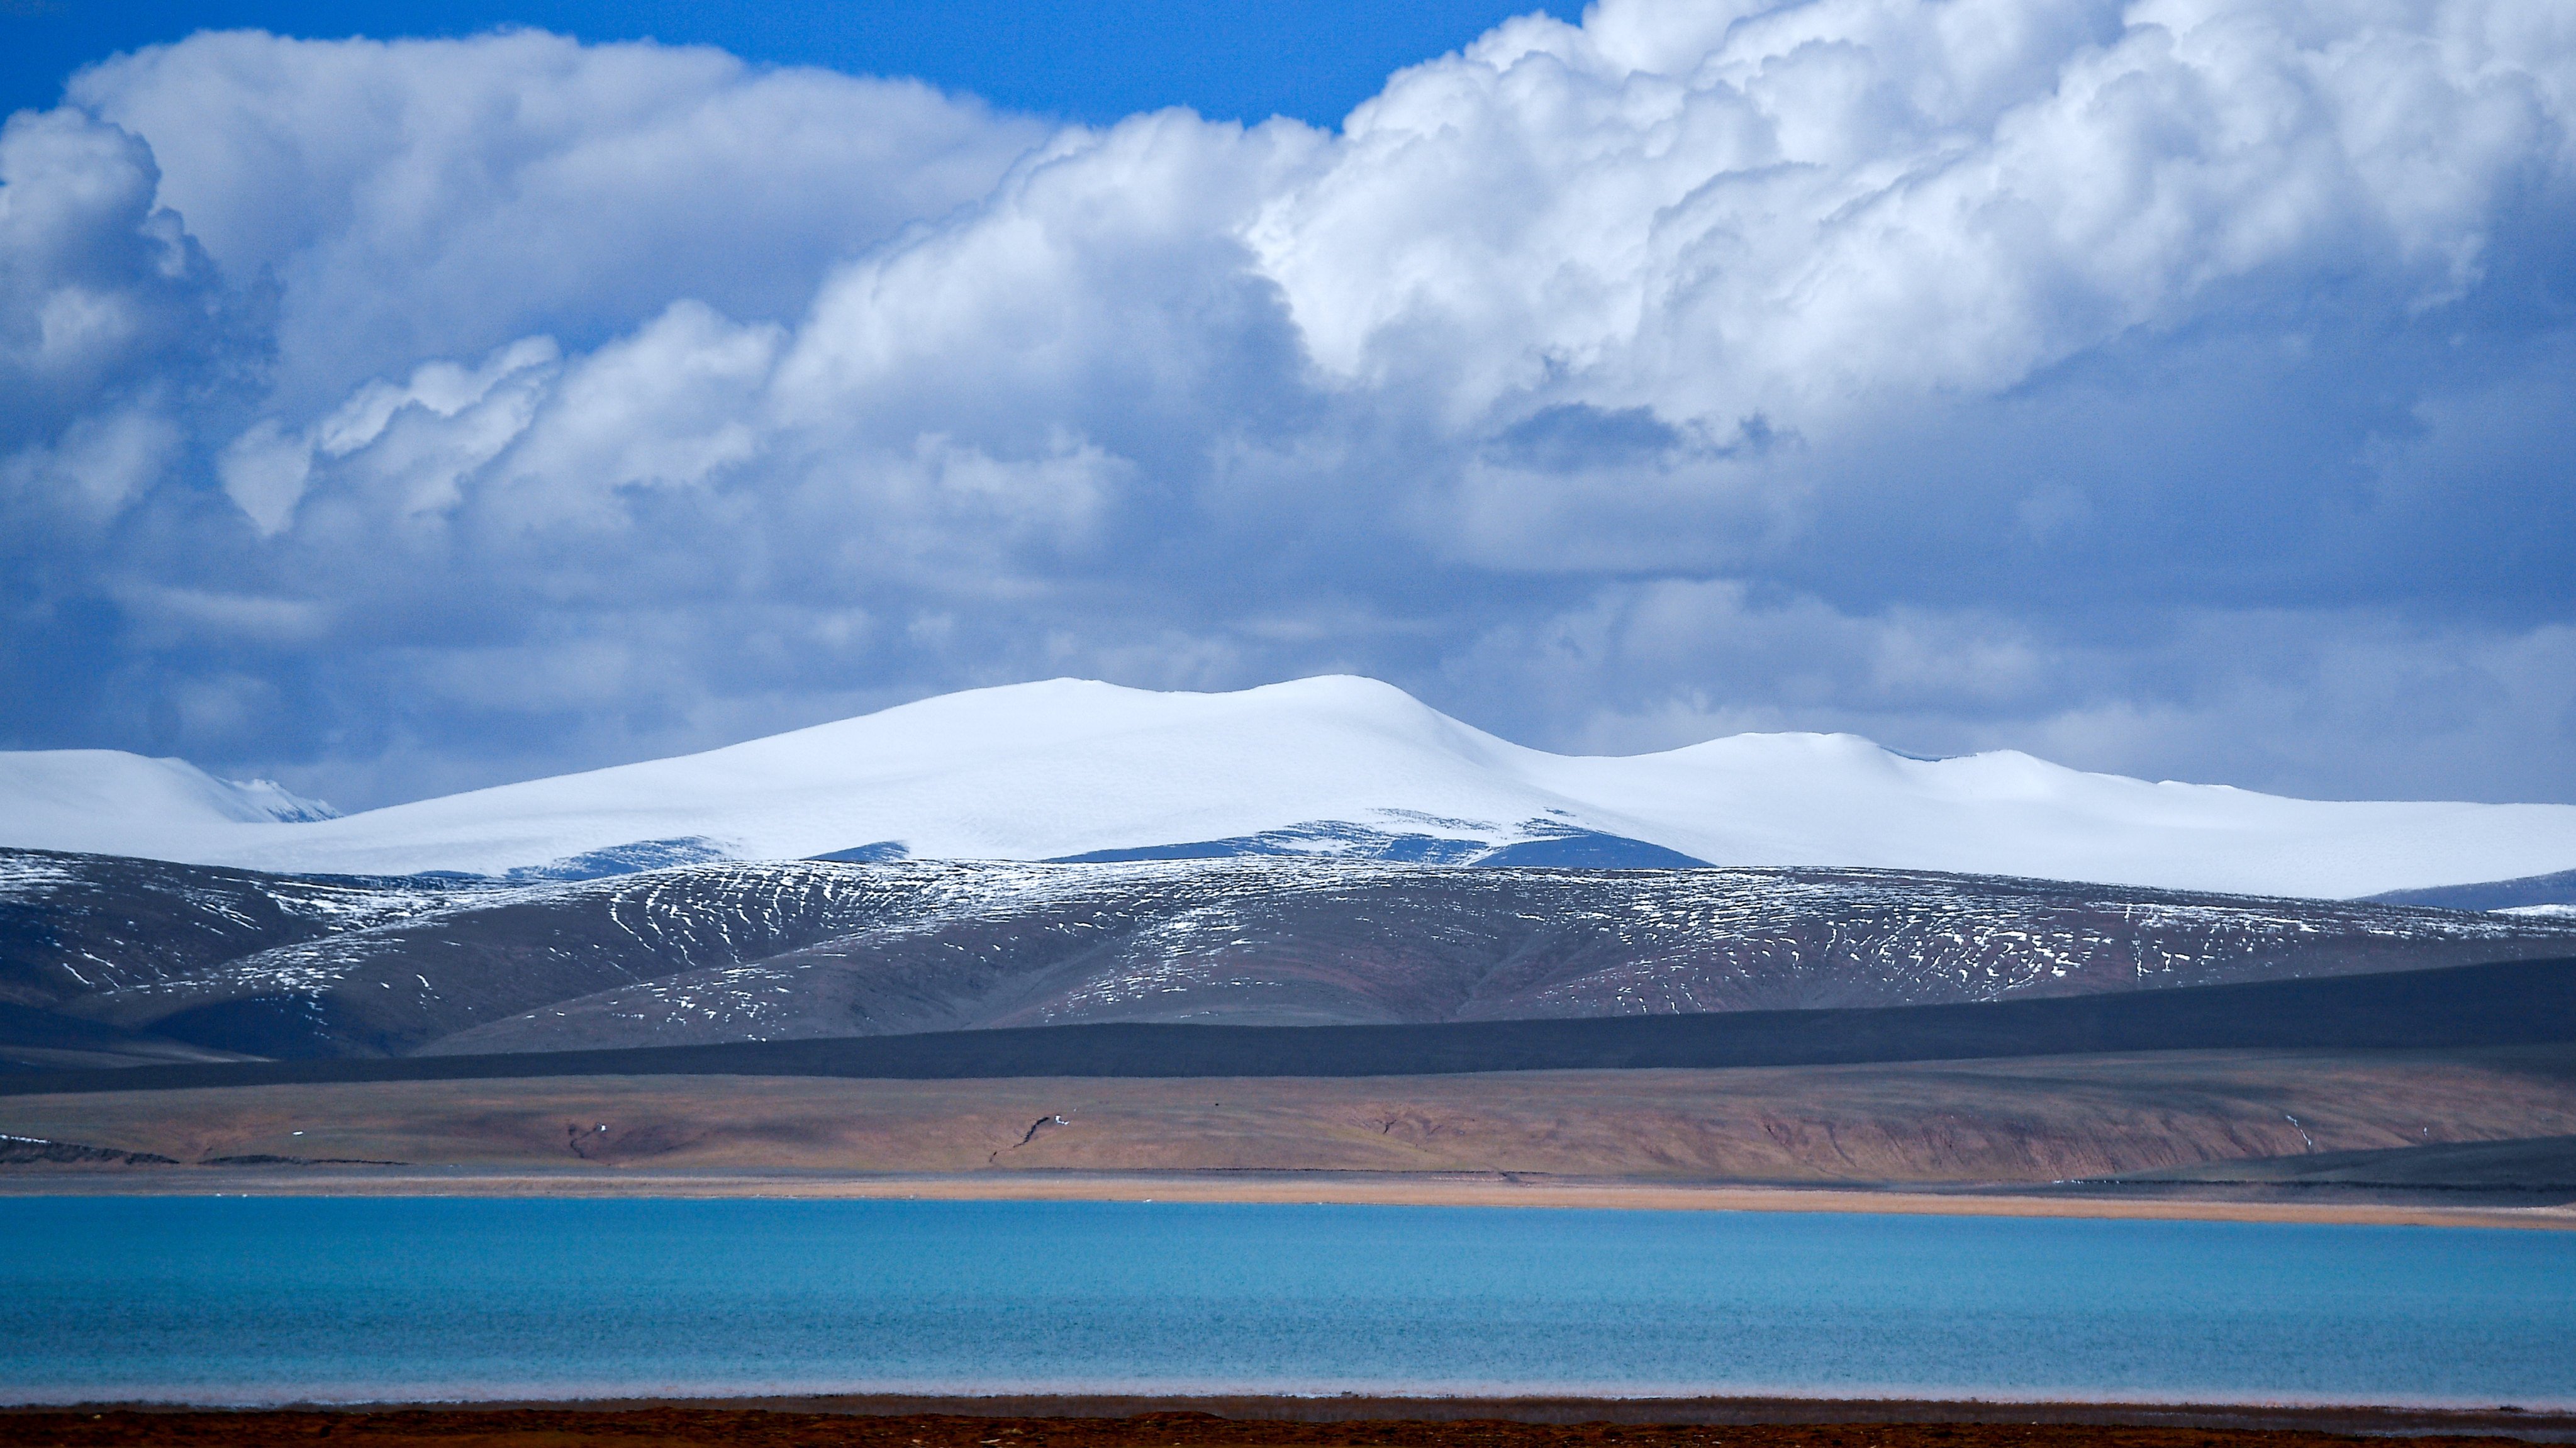 The Tibetan Plateau is home to more than 1,400 lakes. Photo: Xinhua